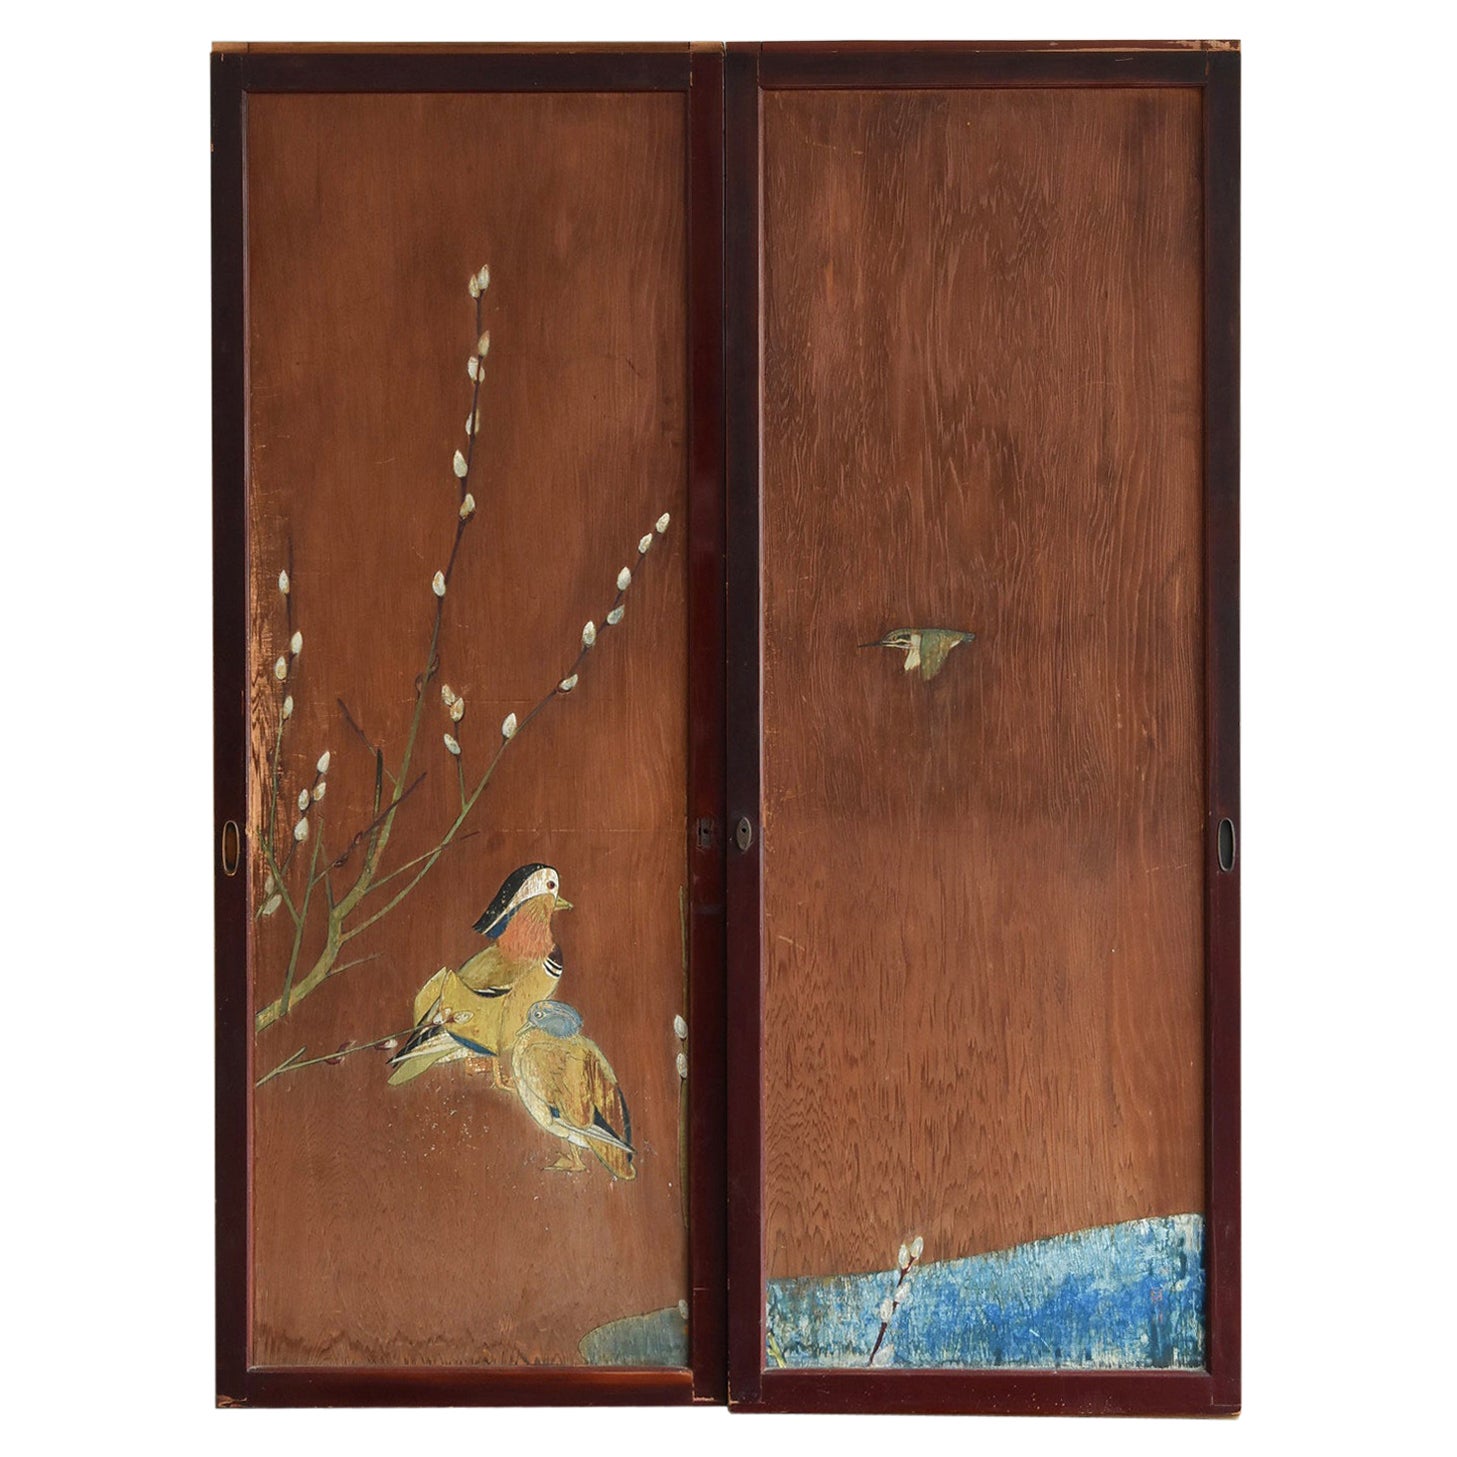 Japanese Antique Sliding Door / Wooden Door with Birds / Painting / Partition